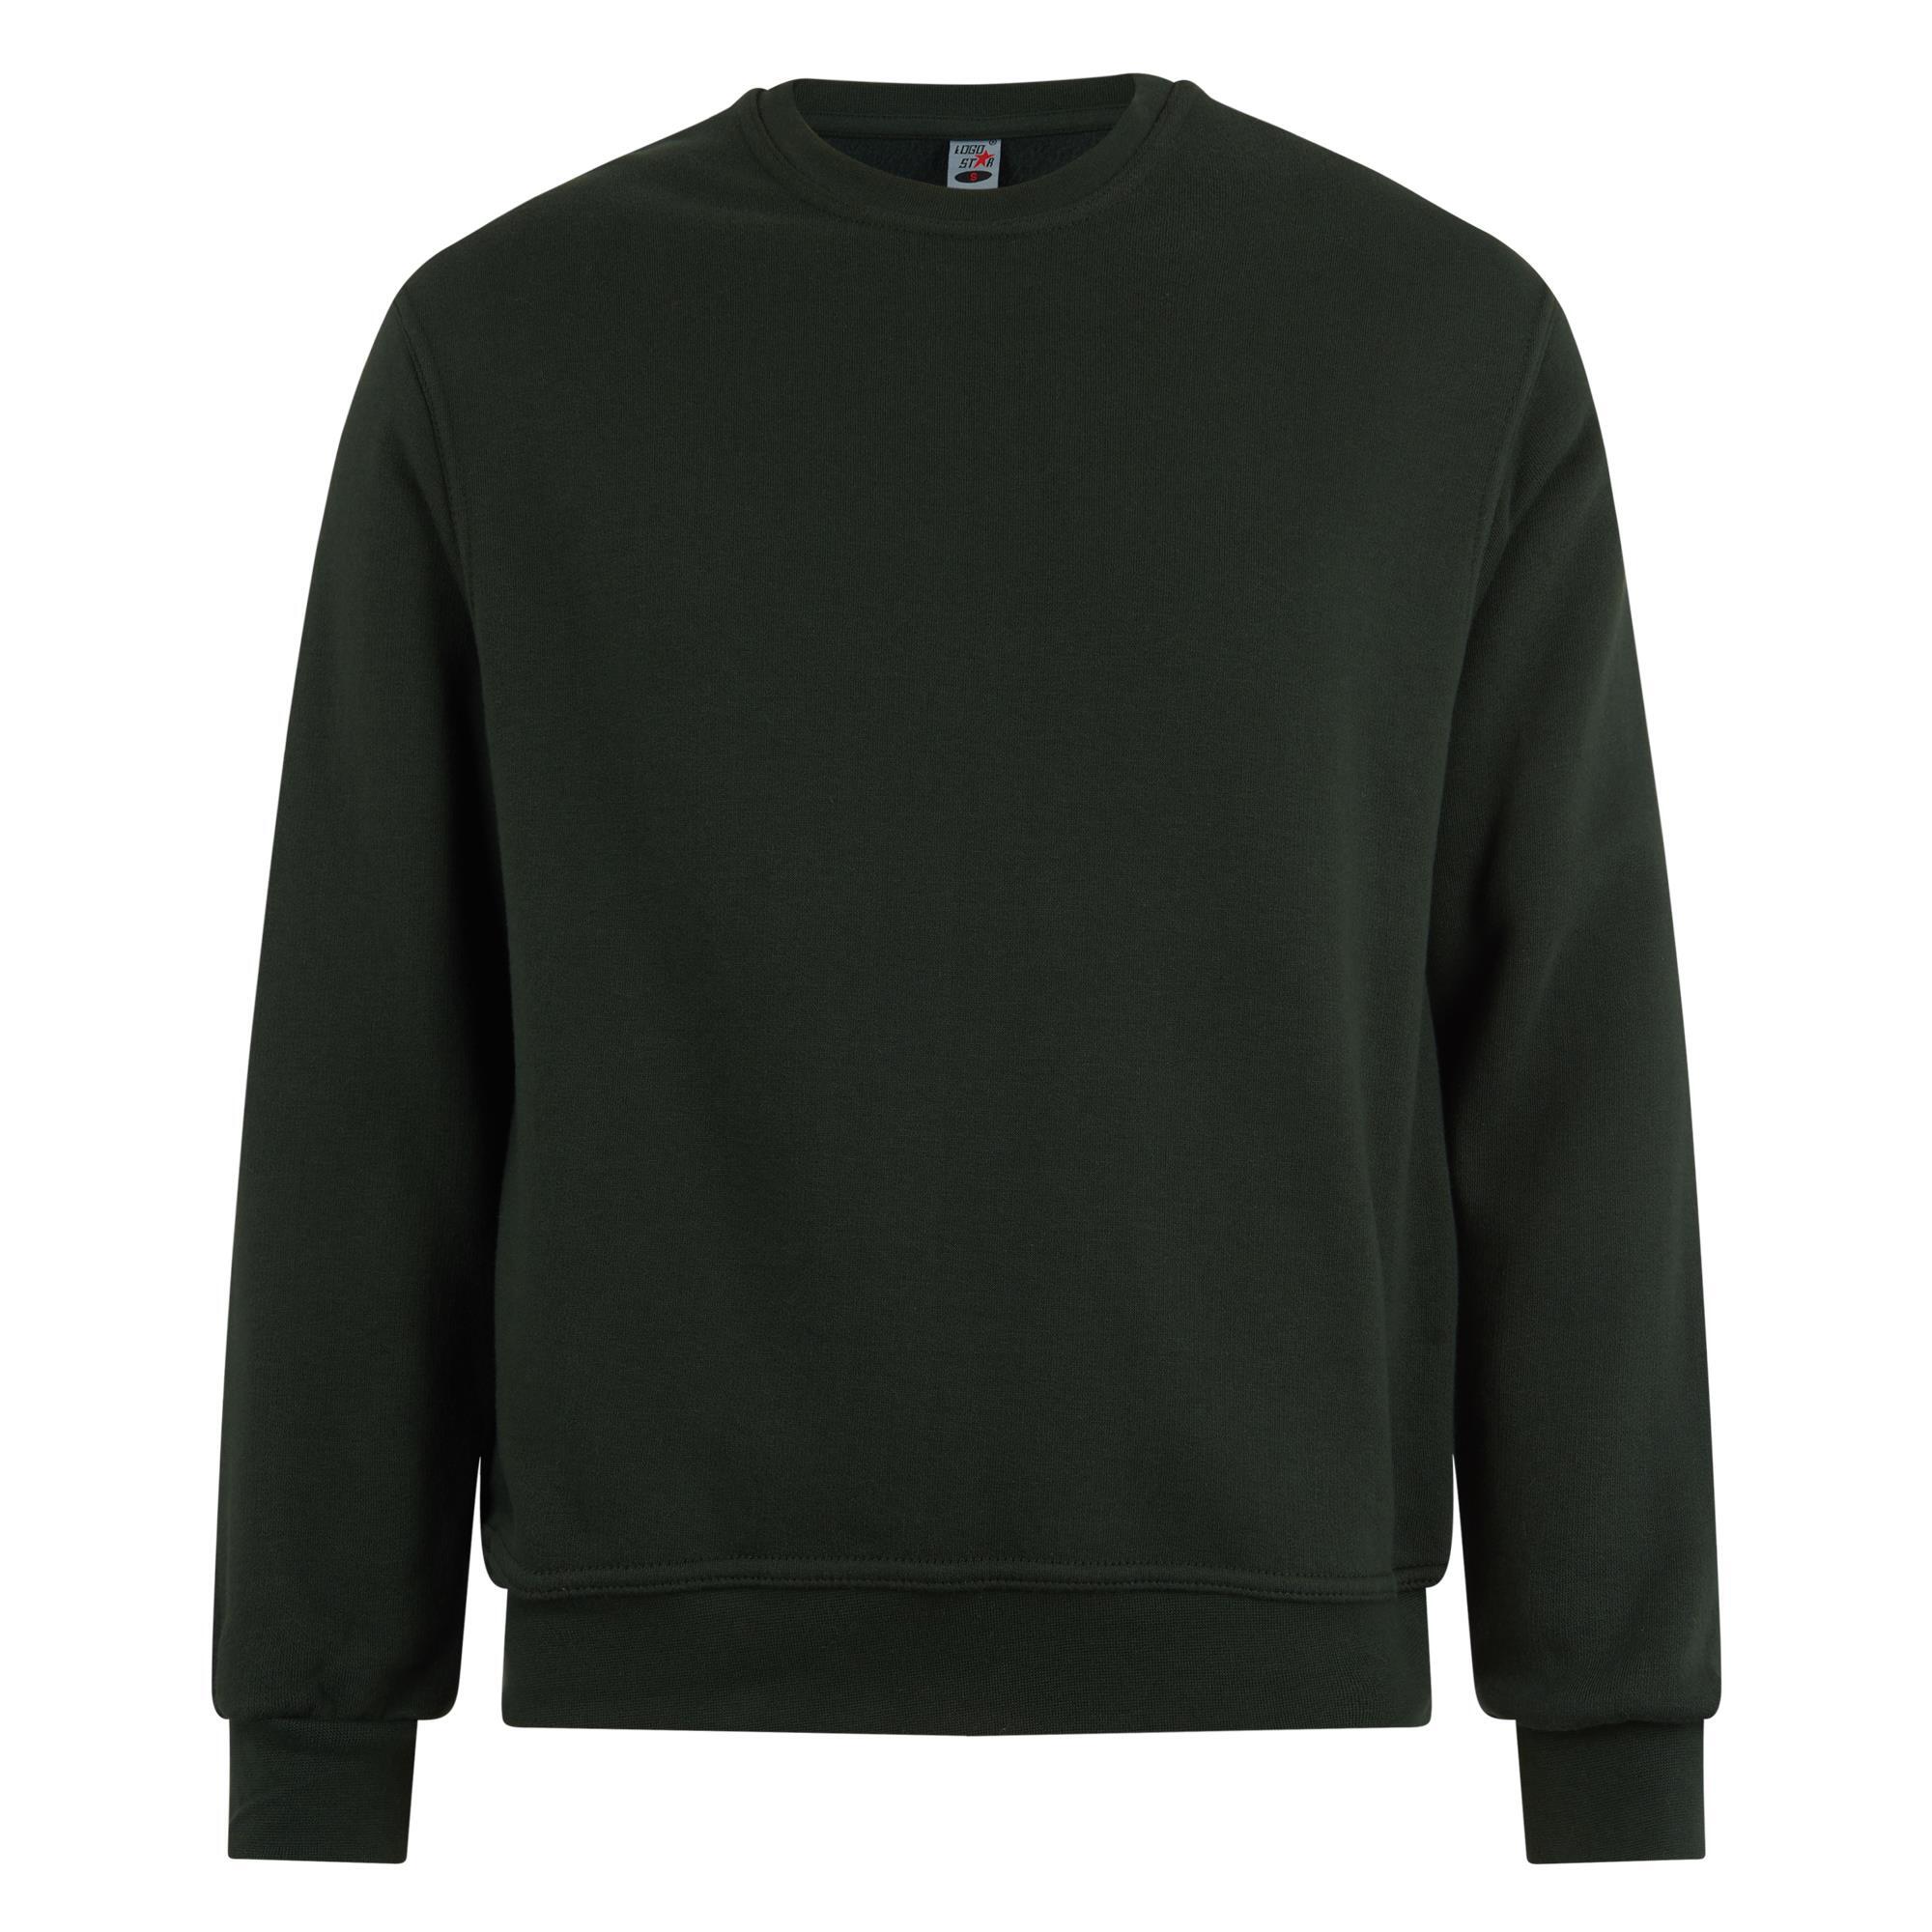 Sweater bos groen voor mannen Logostar